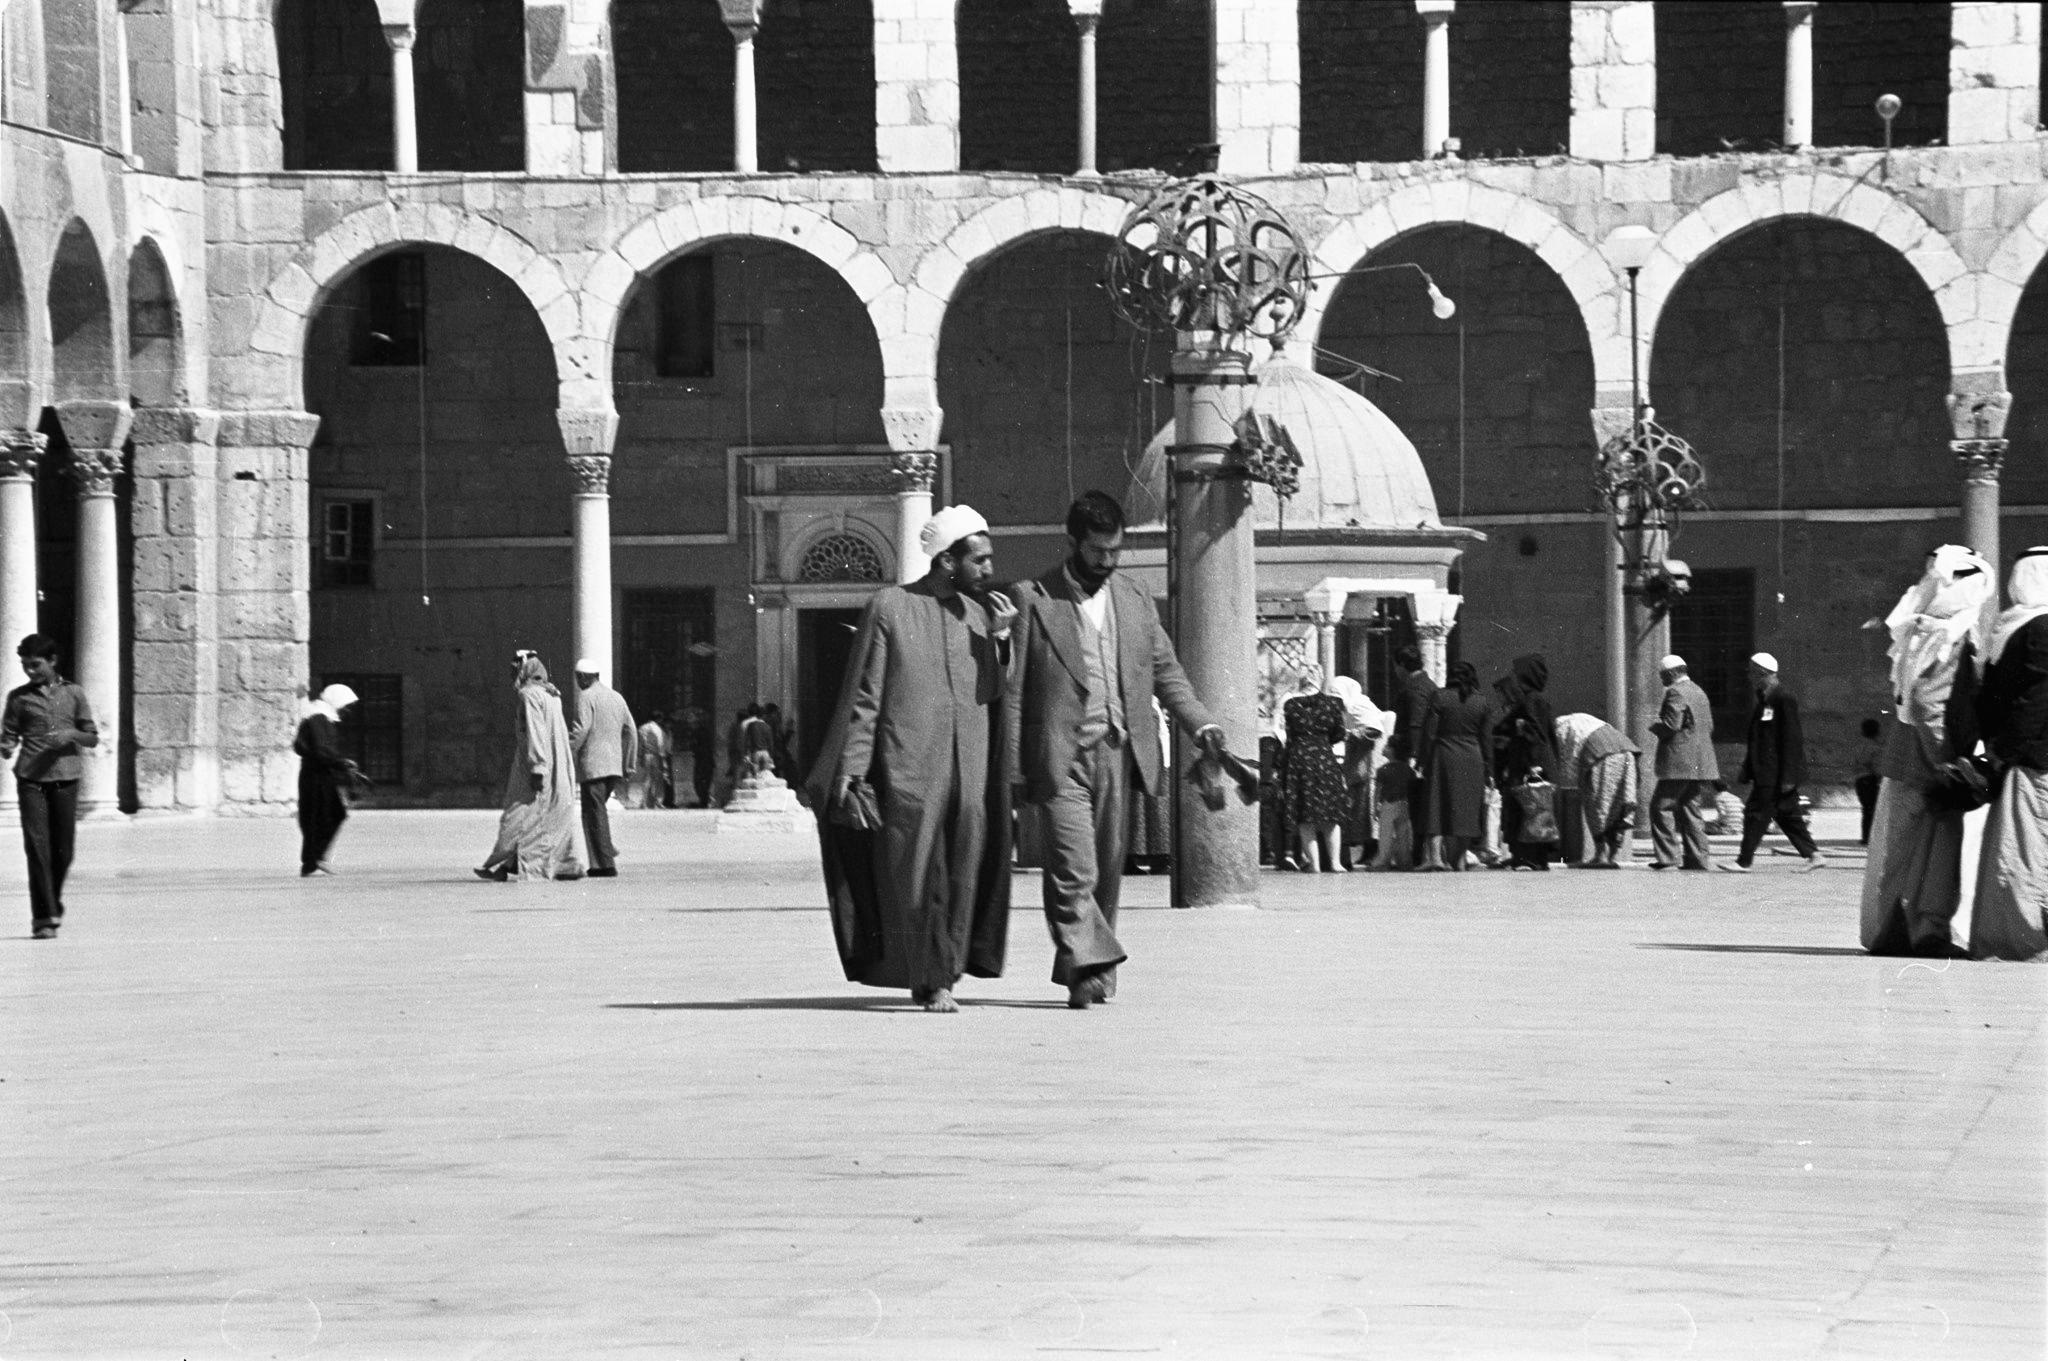 التاريخ السوري المعاصر - صحن مسجد بني أمية عام 1980 (1)